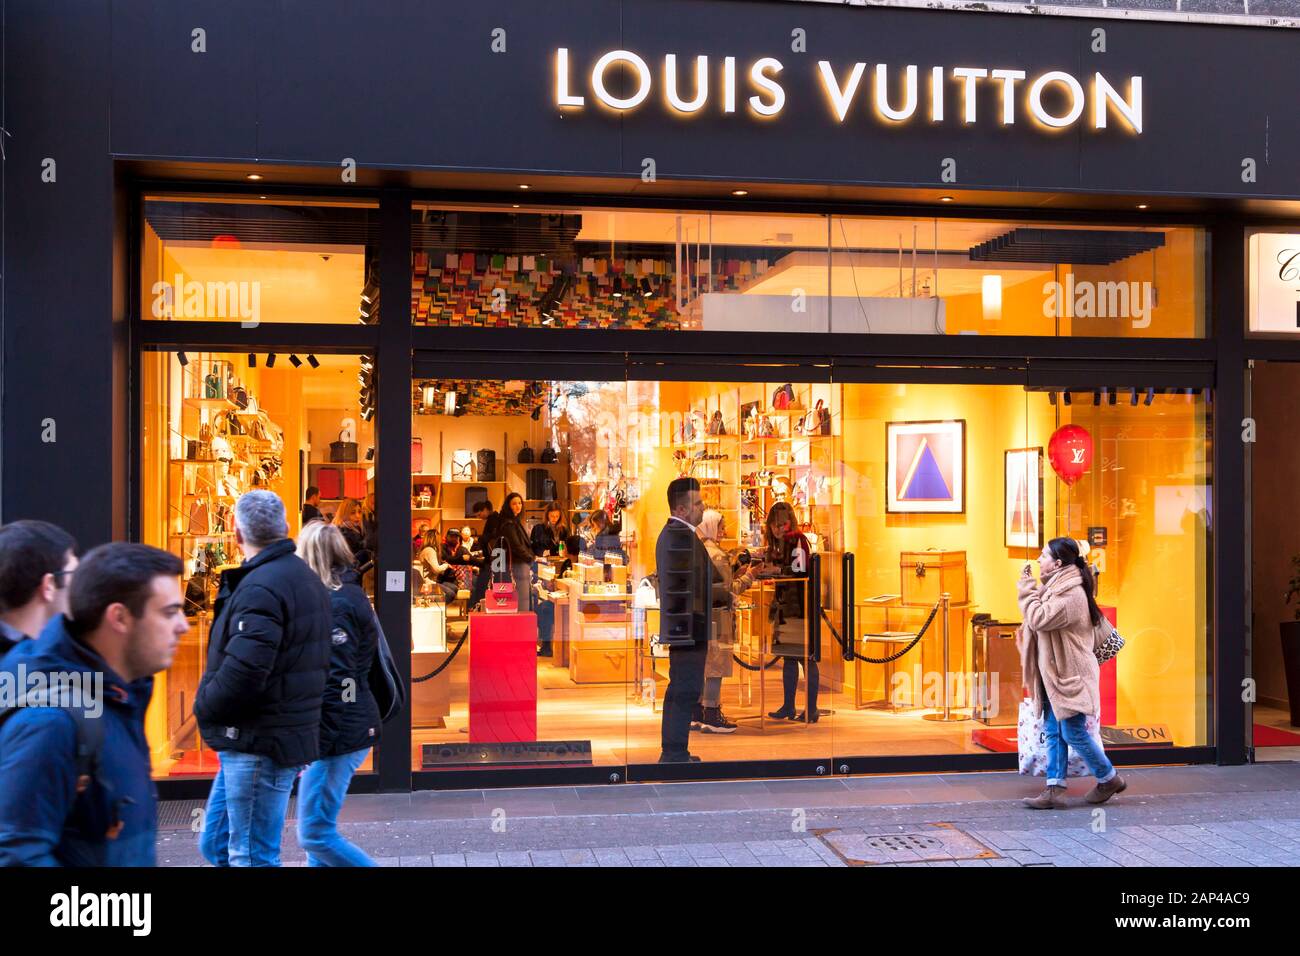 Die Louis Vuitton Store auf der Einkaufsstraße Hohe Straße, Köln,  Deutschland der Louis Vuitton Store in der Einkaufsstrasse Hohe Straße,  Köln, DE Stockfotografie - Alamy